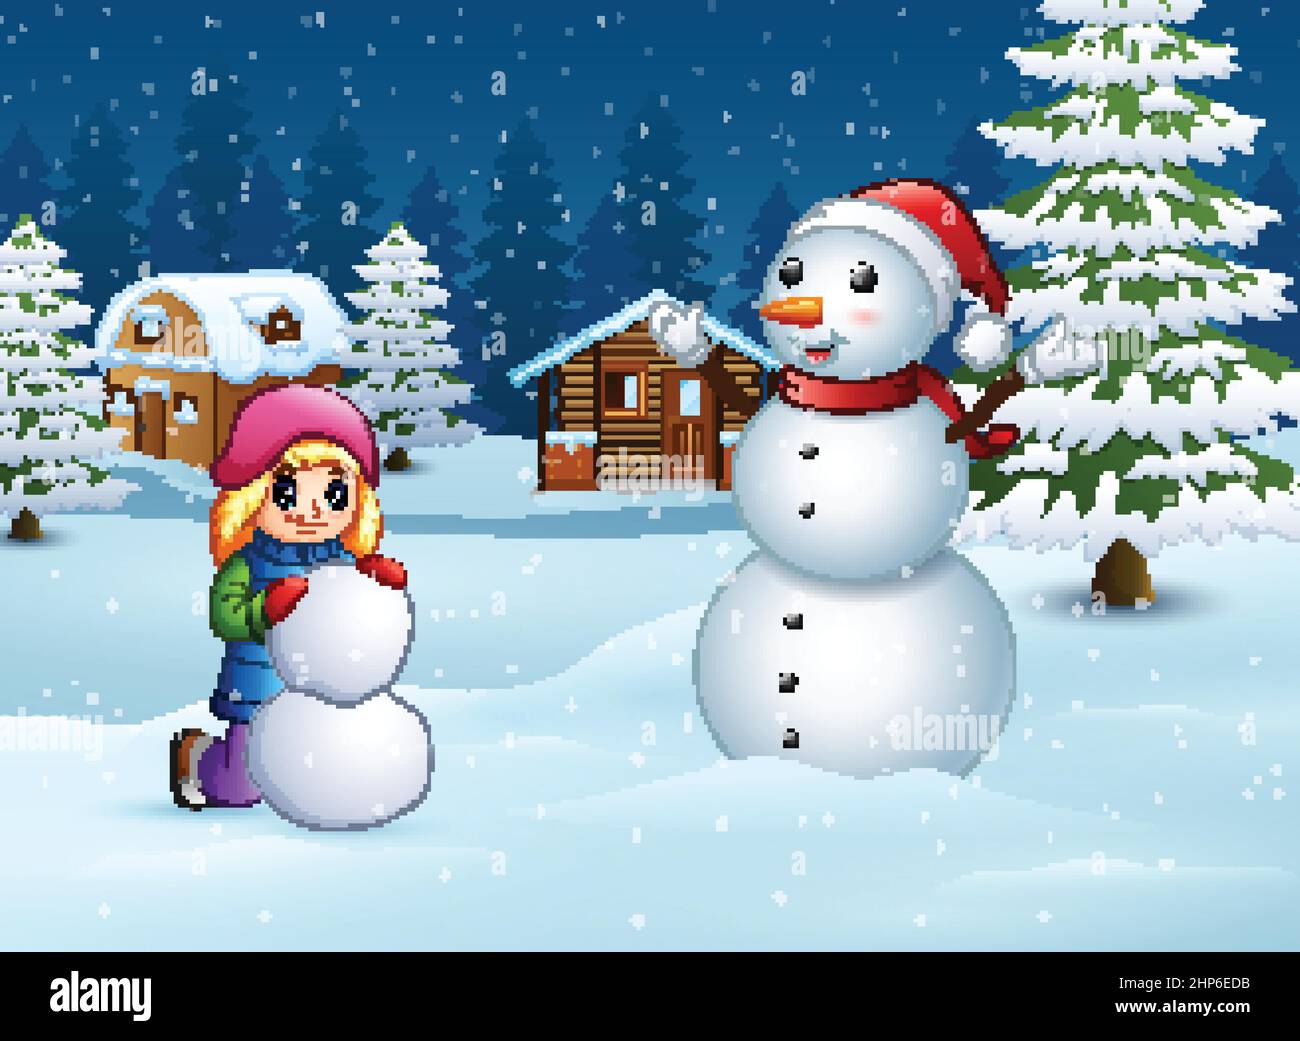 Ein Mädchen, das Schneemann im Winter und in der verschneiten Landschaft macht Stock Vektor